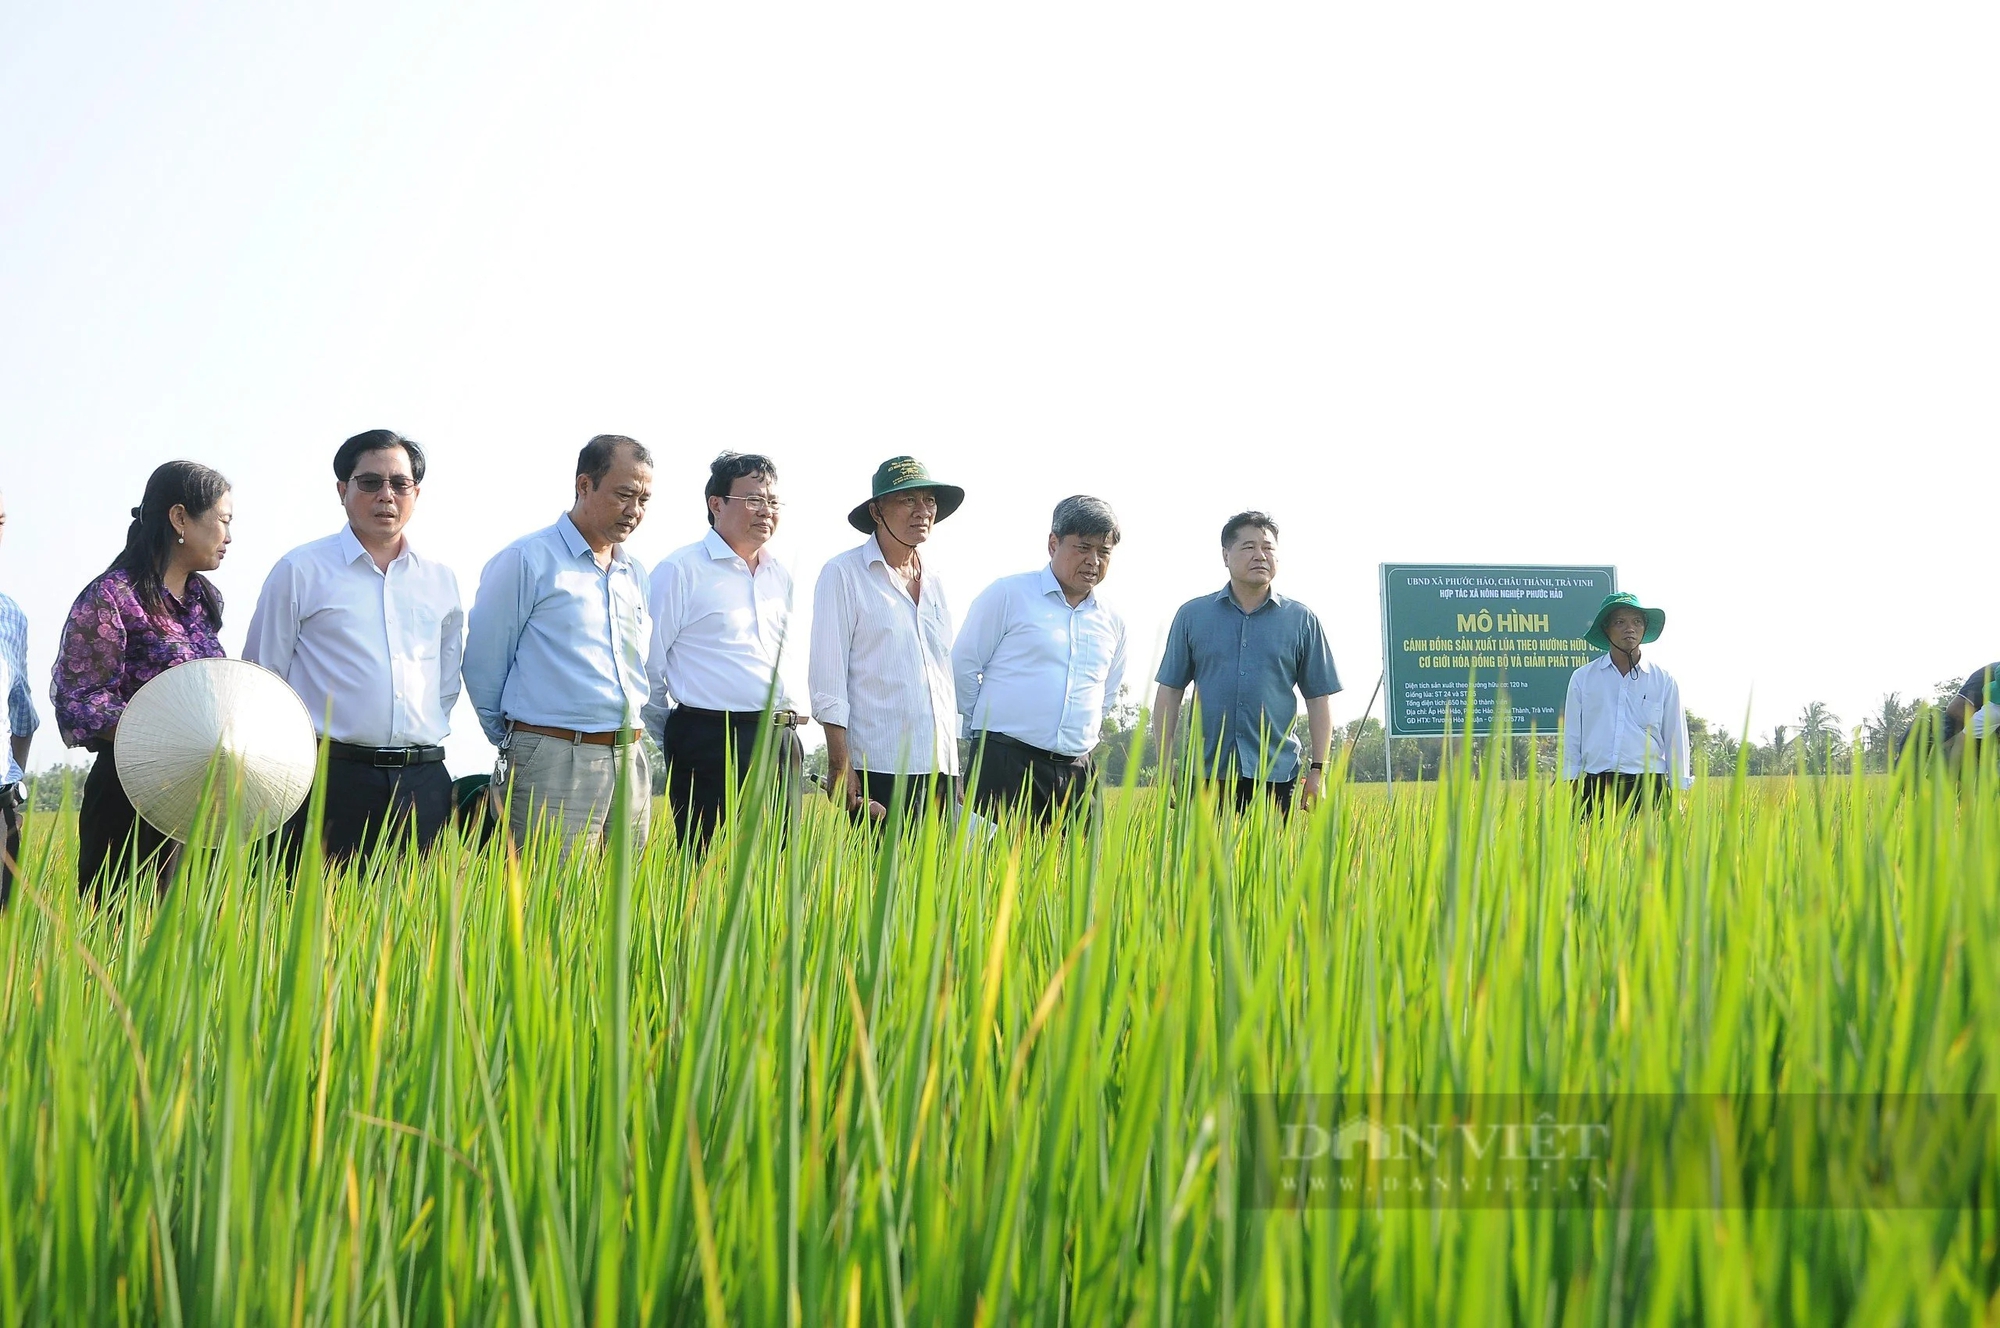 Đã có những người làm khuyến nông cộng đồng ở An Giang, Kiên Giang thu nhập tới 20 triệu đồng/tháng- Ảnh 2.